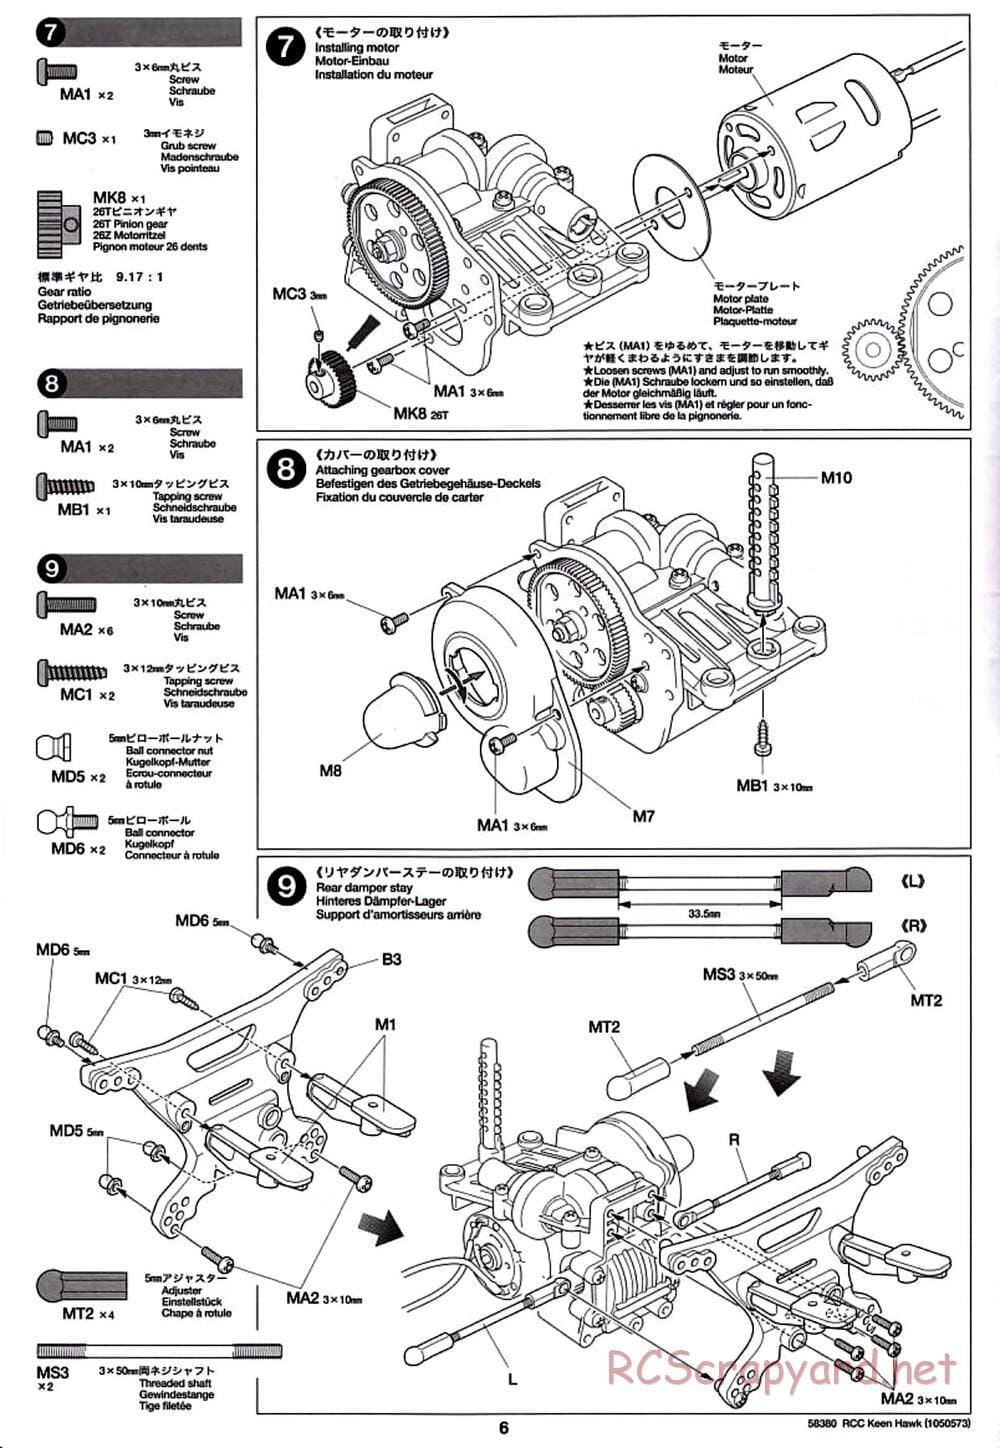 Tamiya - Keen Hawk Chassis - Manual - Page 6